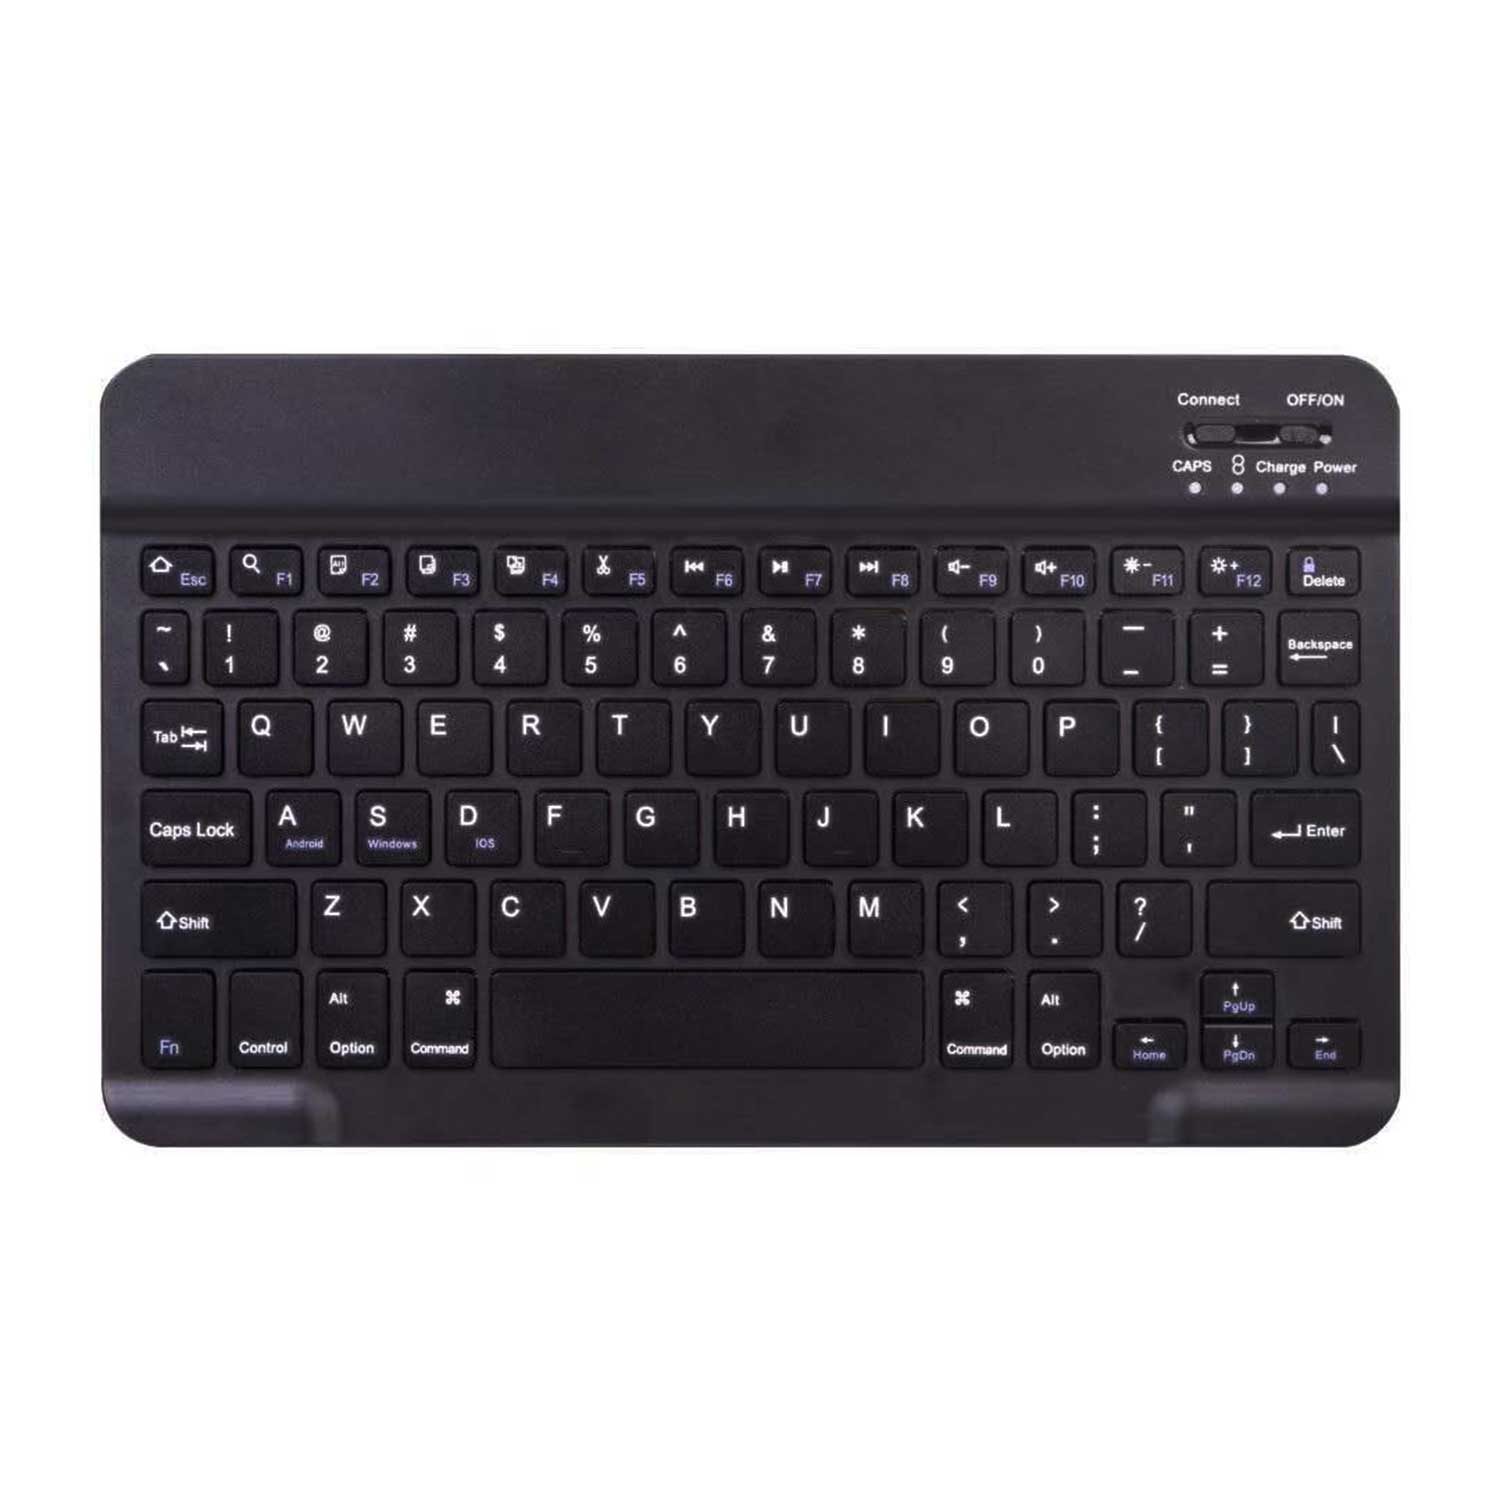 Samsung Galaxy Tab A8 Bluetooth Keyboard Cover Case Leather Black